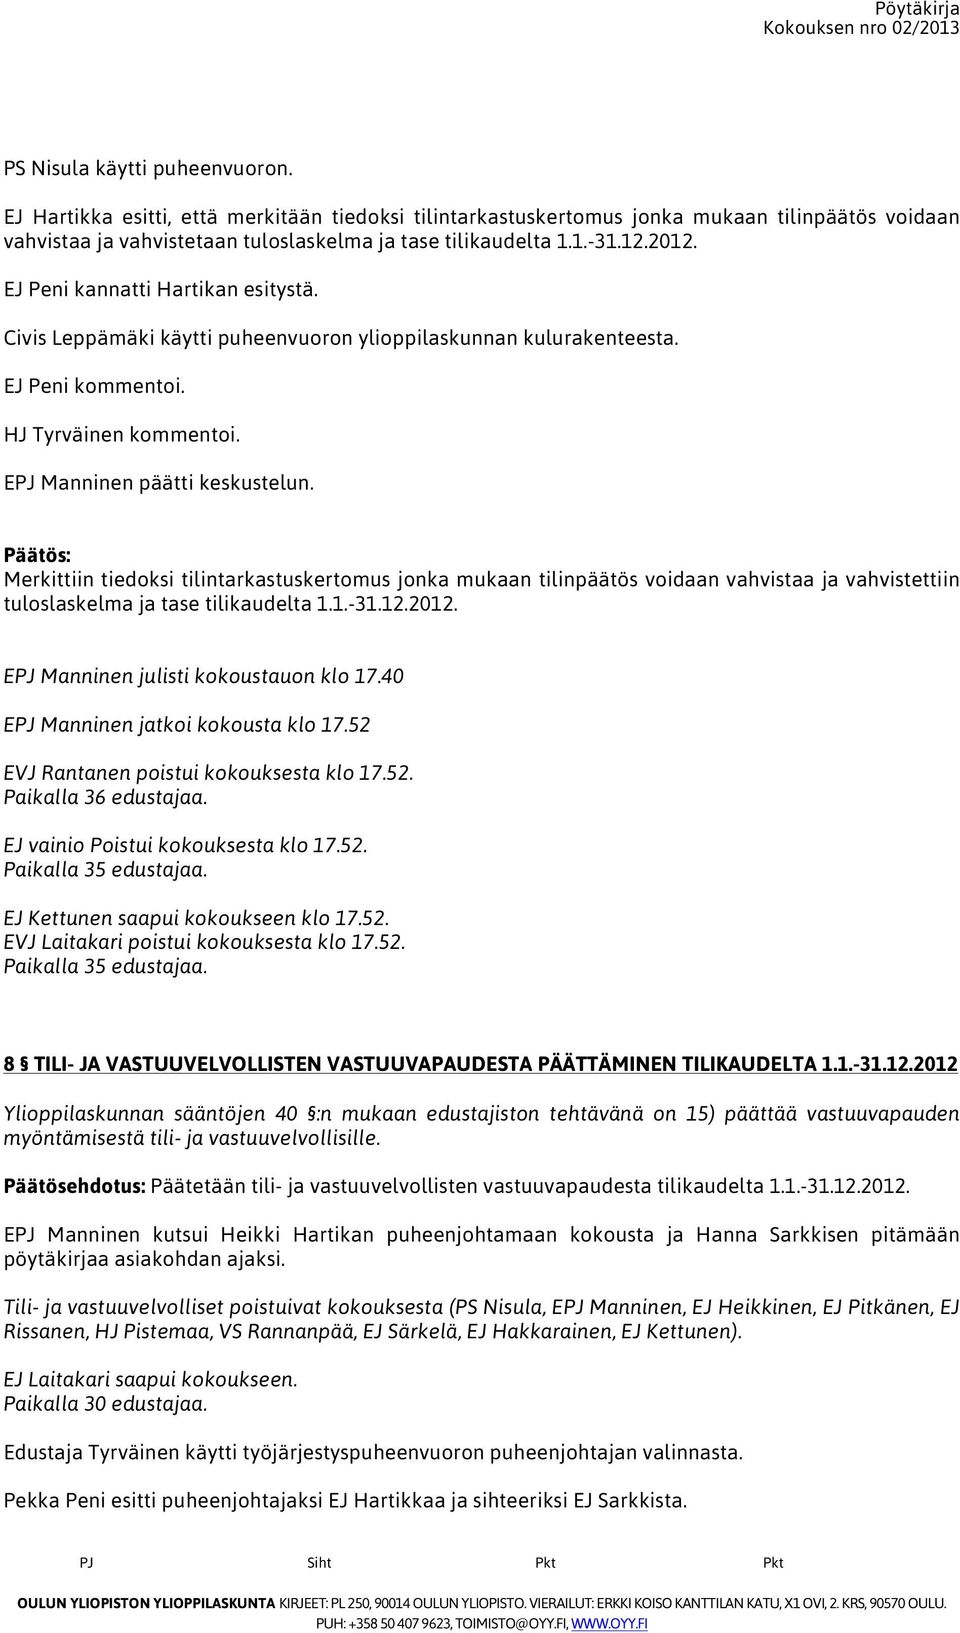 Merkittiin tiedoksi tilintarkastuskertomus jonka mukaan tilinpäätös voidaan vahvistaa ja vahvistettiin tuloslaskelma ja tase tilikaudelta 1.1.-31.12.2012. EPJ Manninen julisti kokoustauon klo 17.